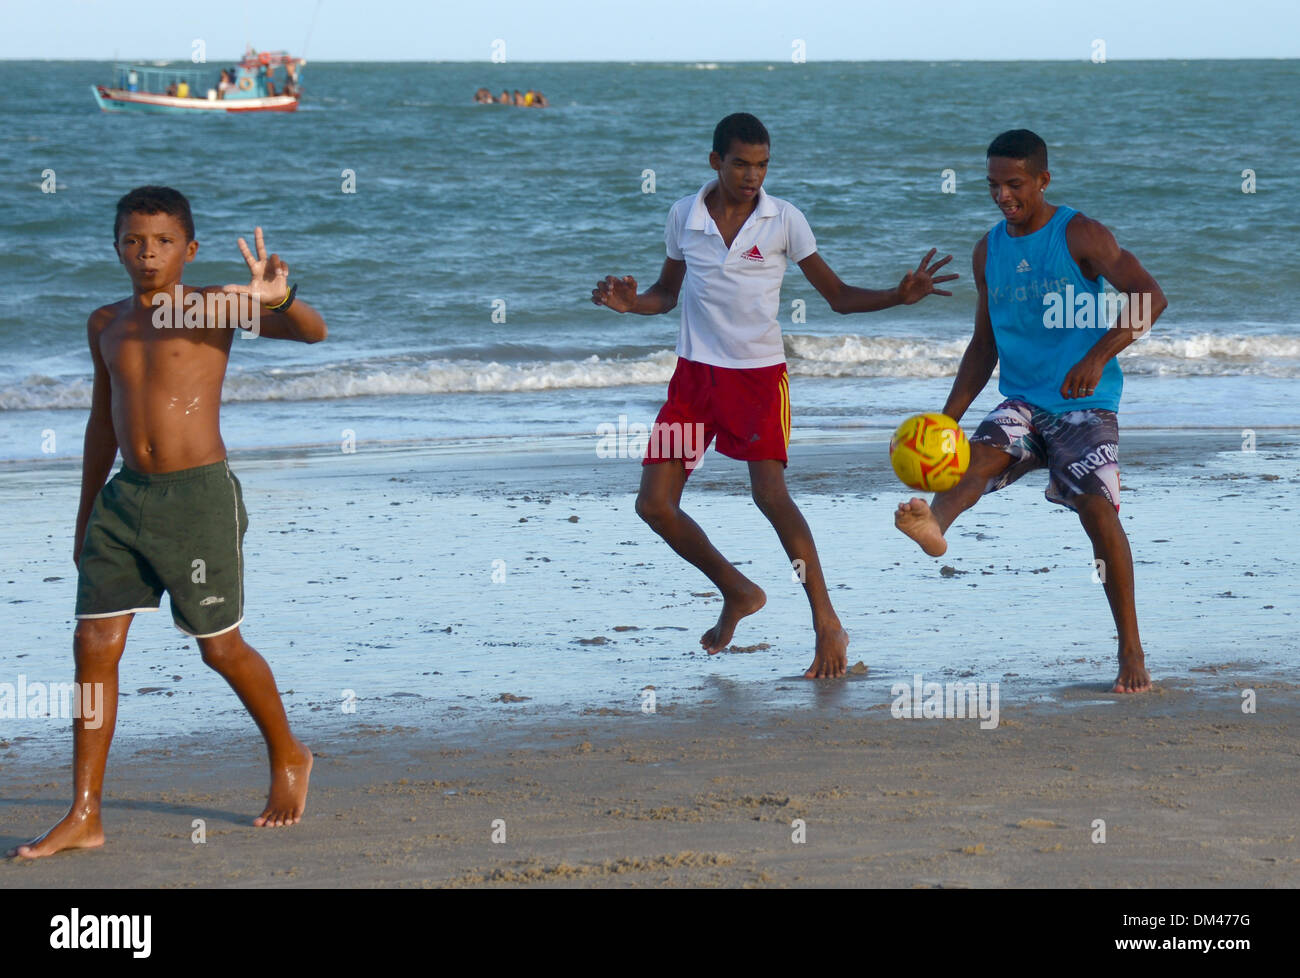 Natal, Brésil. 7 Décembre, 2013. Un groupe de jeunes jouer un match de soccer de plage sur une plage près de la ville de Natal, Brésil, 7 décembre 2013. Le Brésil se prépare pour la prochaine Coupe du monde de football 2014. Photo : Marcus Brandt/dpa/Alamy Live News Banque D'Images